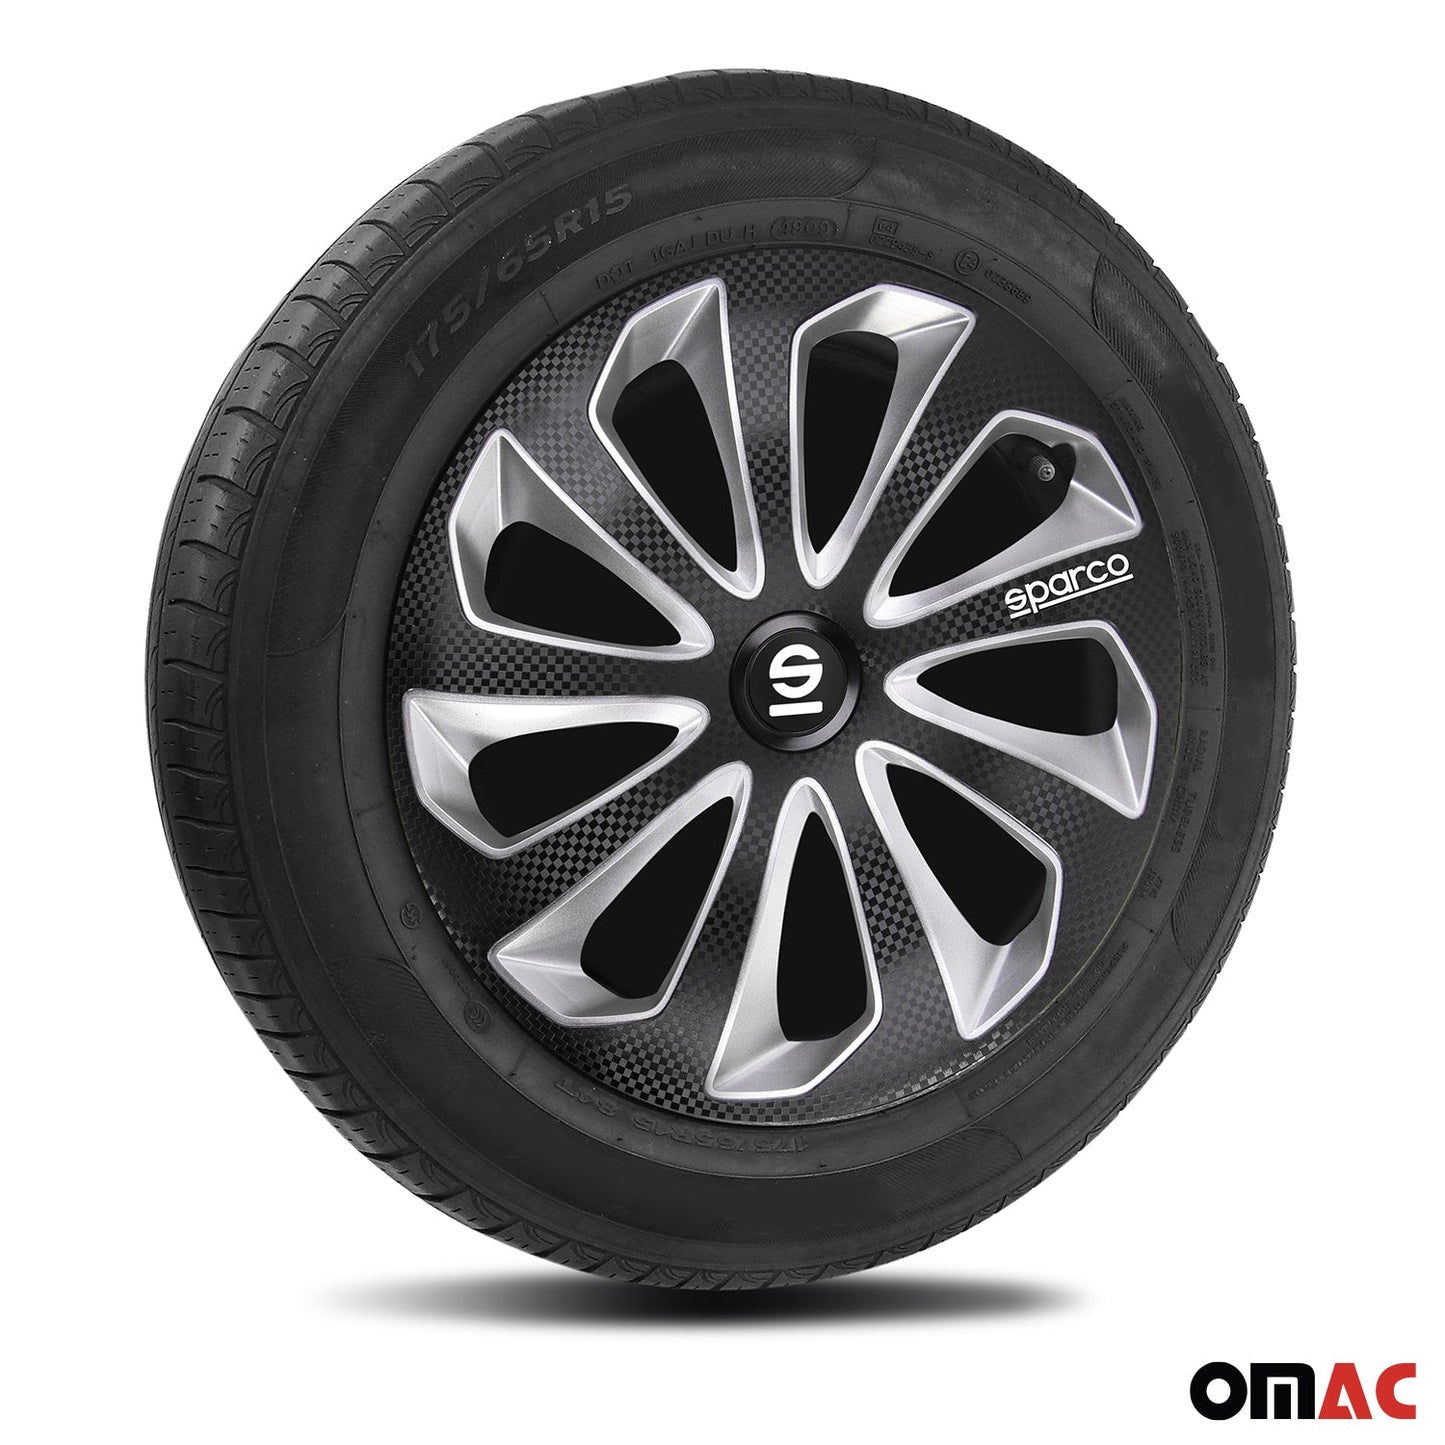 OMAC 14" Sparco Sicilia Wheel Covers Hubcaps Black Carbon Silver 4 Pcs 96SPC1475BKSVC